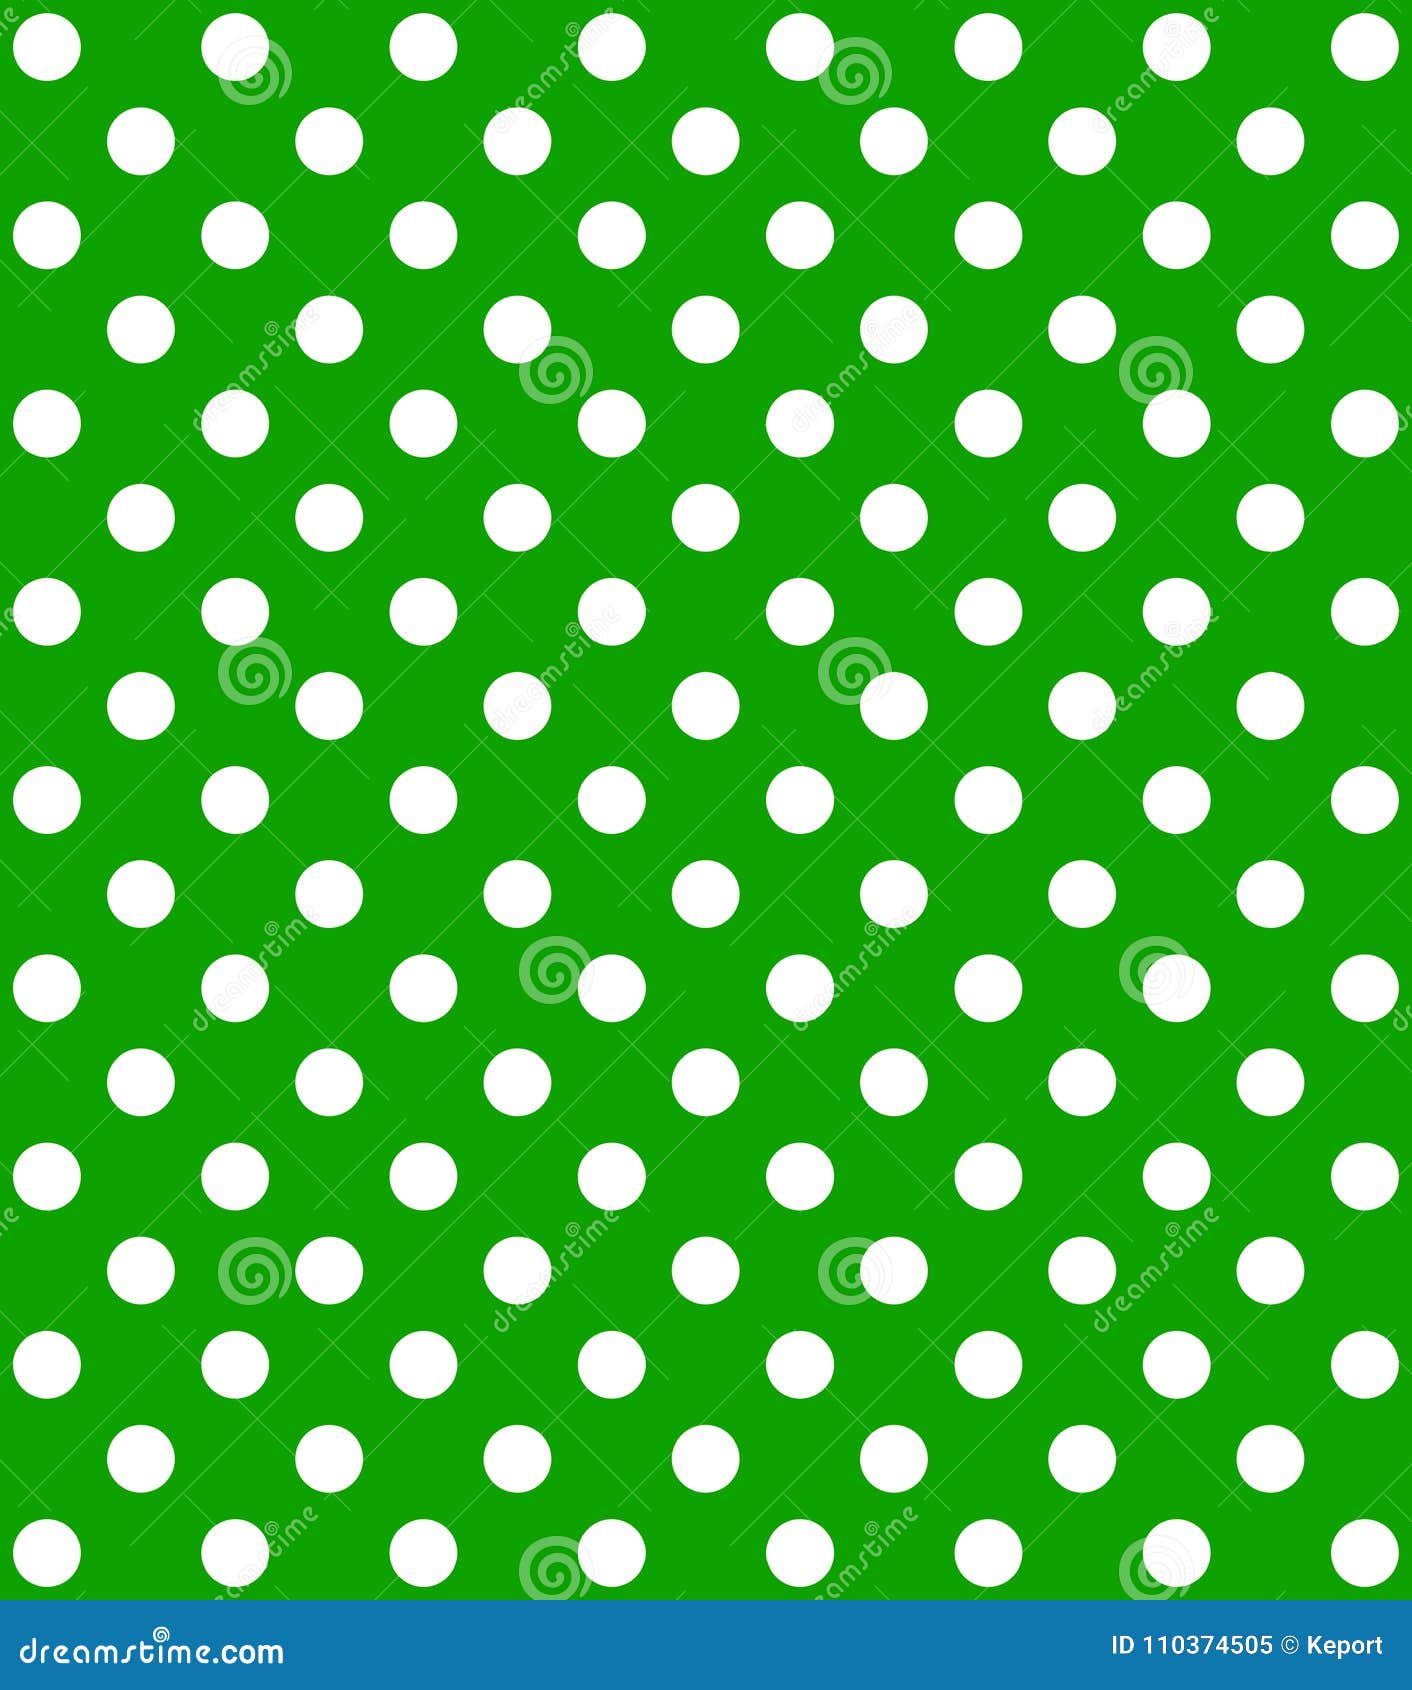 Polka Dot Background Green White Stock Illustration - Illustration of ...